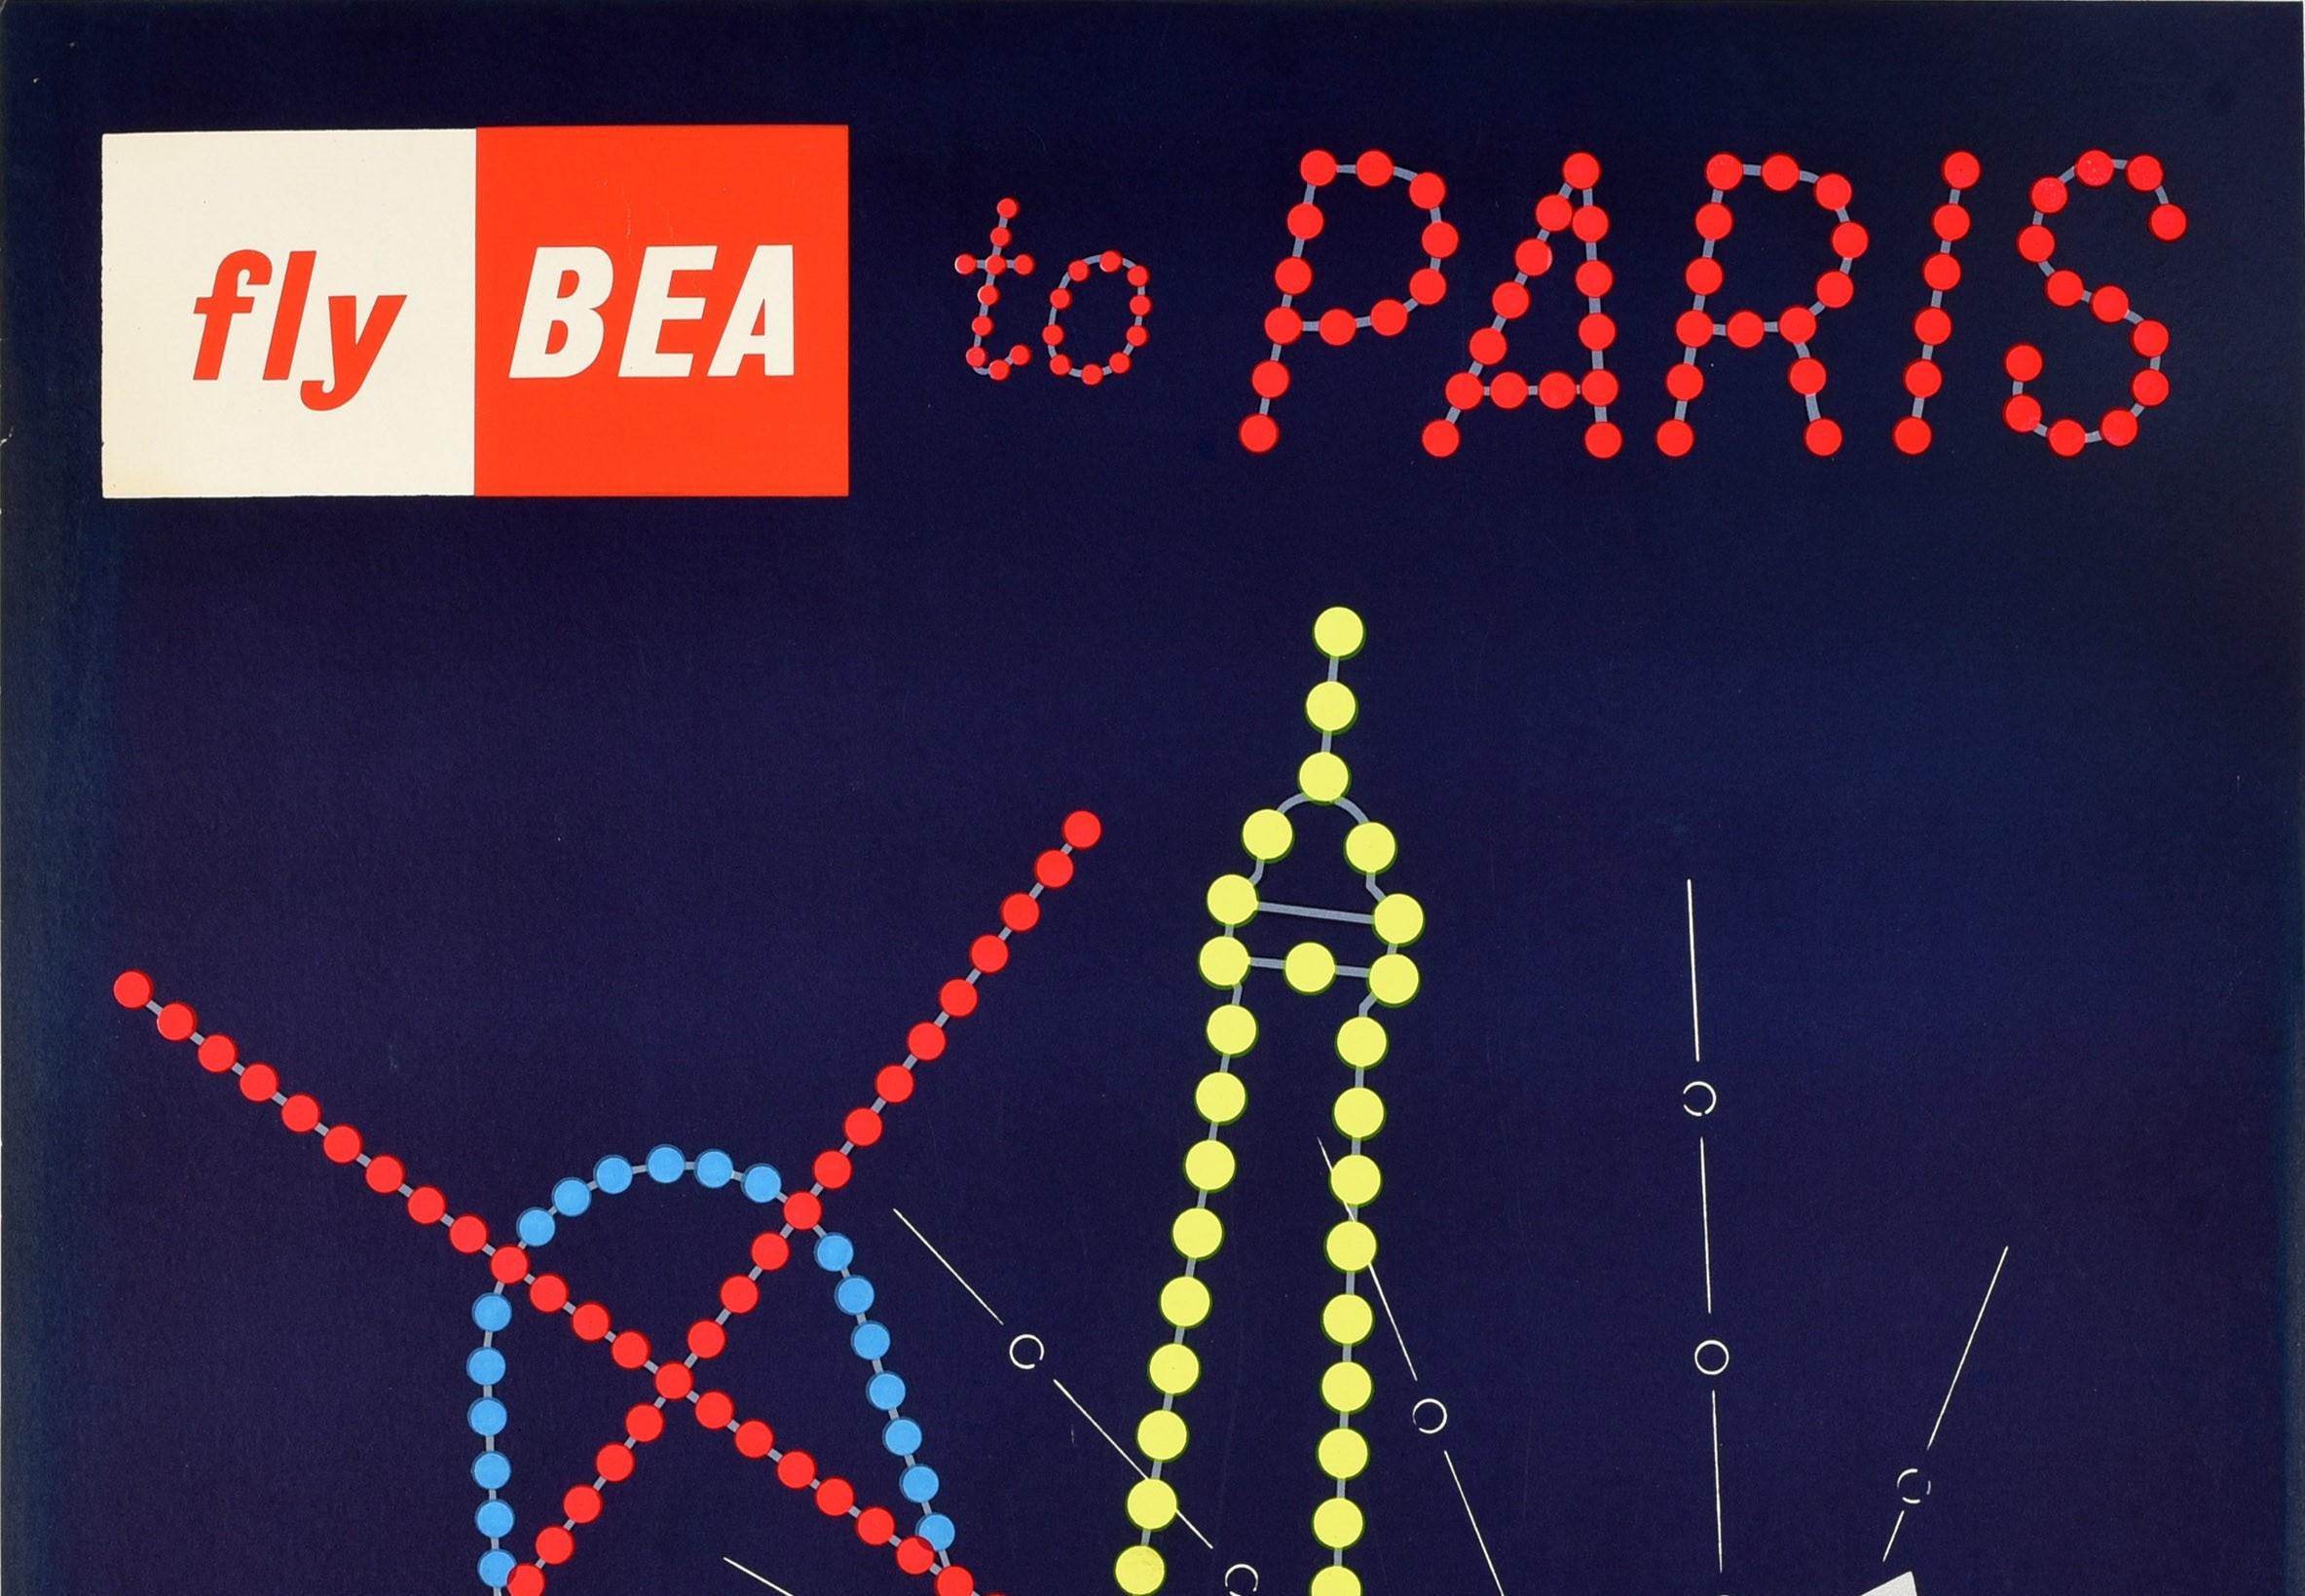 Affiche originale de voyage de compagnie aérienne vintage - Fly BEA to Paris - représentant un dessin coloré d'un verre à champagne de vin mousseux avec les contours de la Tour Eiffel en points jaunes et le moulin à vent Montmartre Moulin Rouge en